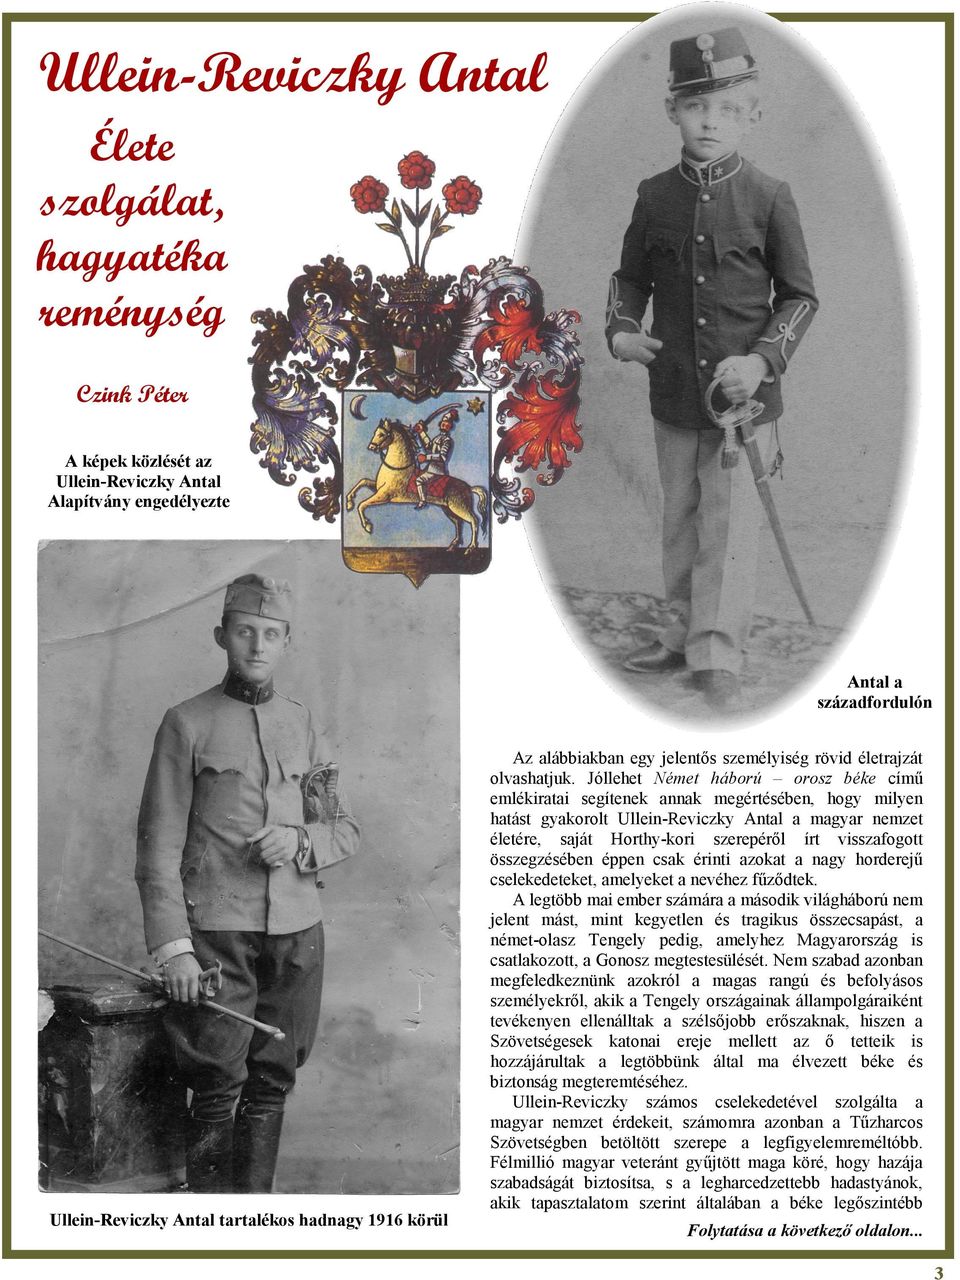 Jóllehet Német háború orosz béke című emlékiratai segítenek annak megértésében, hogy milyen hatást gyakorolt Ullein-Reviczky Antal a magyar nemzet életére, saját Horthy-kori szerepéről írt